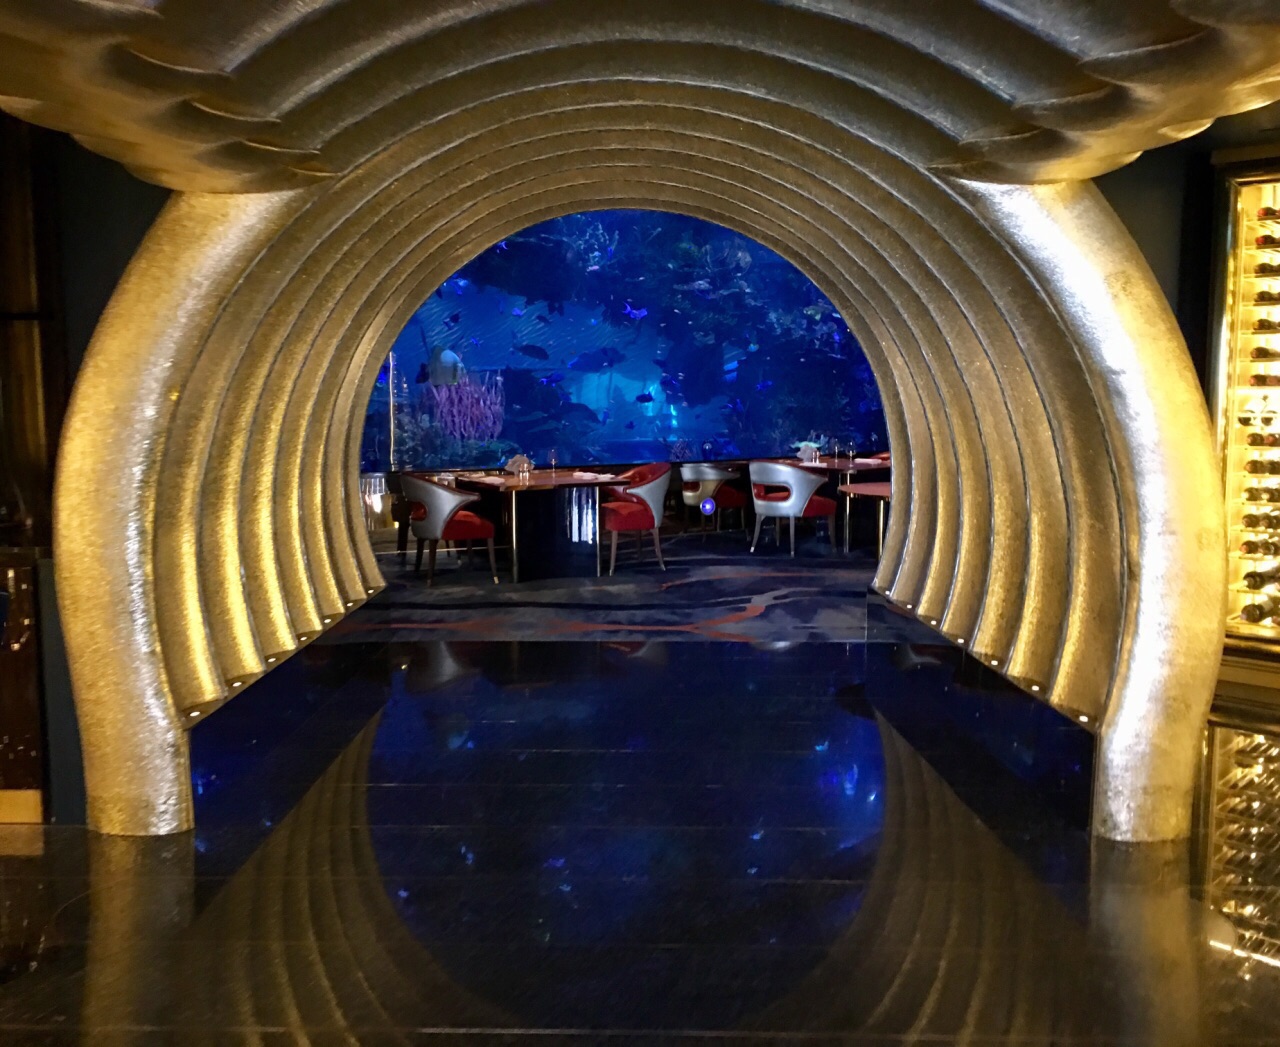 2022迪拜帆船酒店海底餐厅美食餐厅,主要是享受坐在鱼缸边吃饭的...【去哪儿攻略】